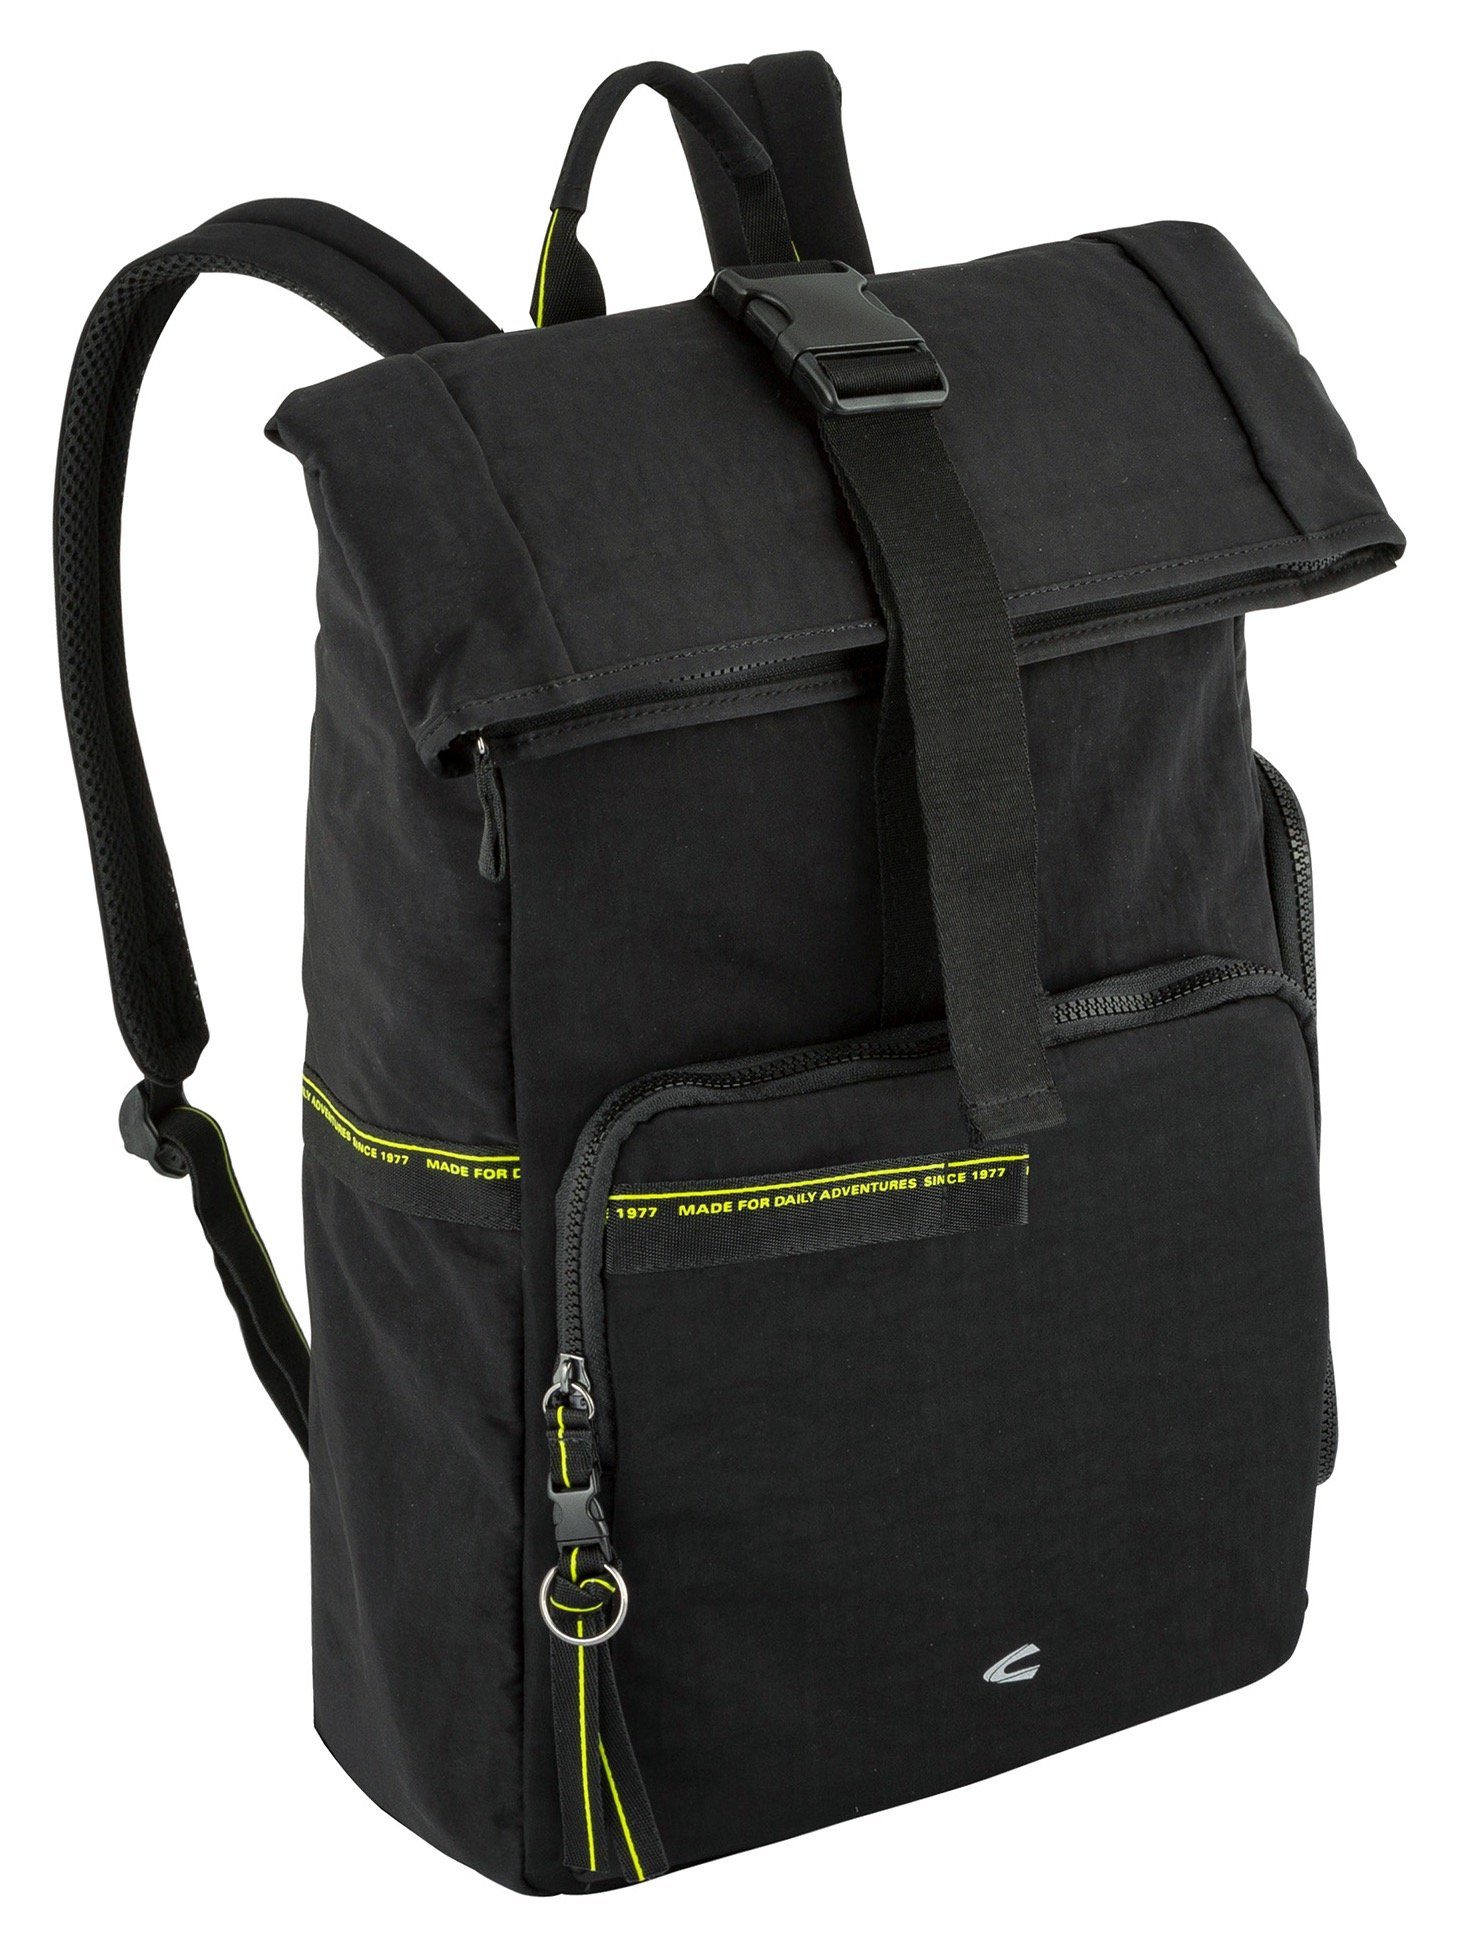 camel active Cityrucksack SPIRIT Backpack black praktischen L, im Design